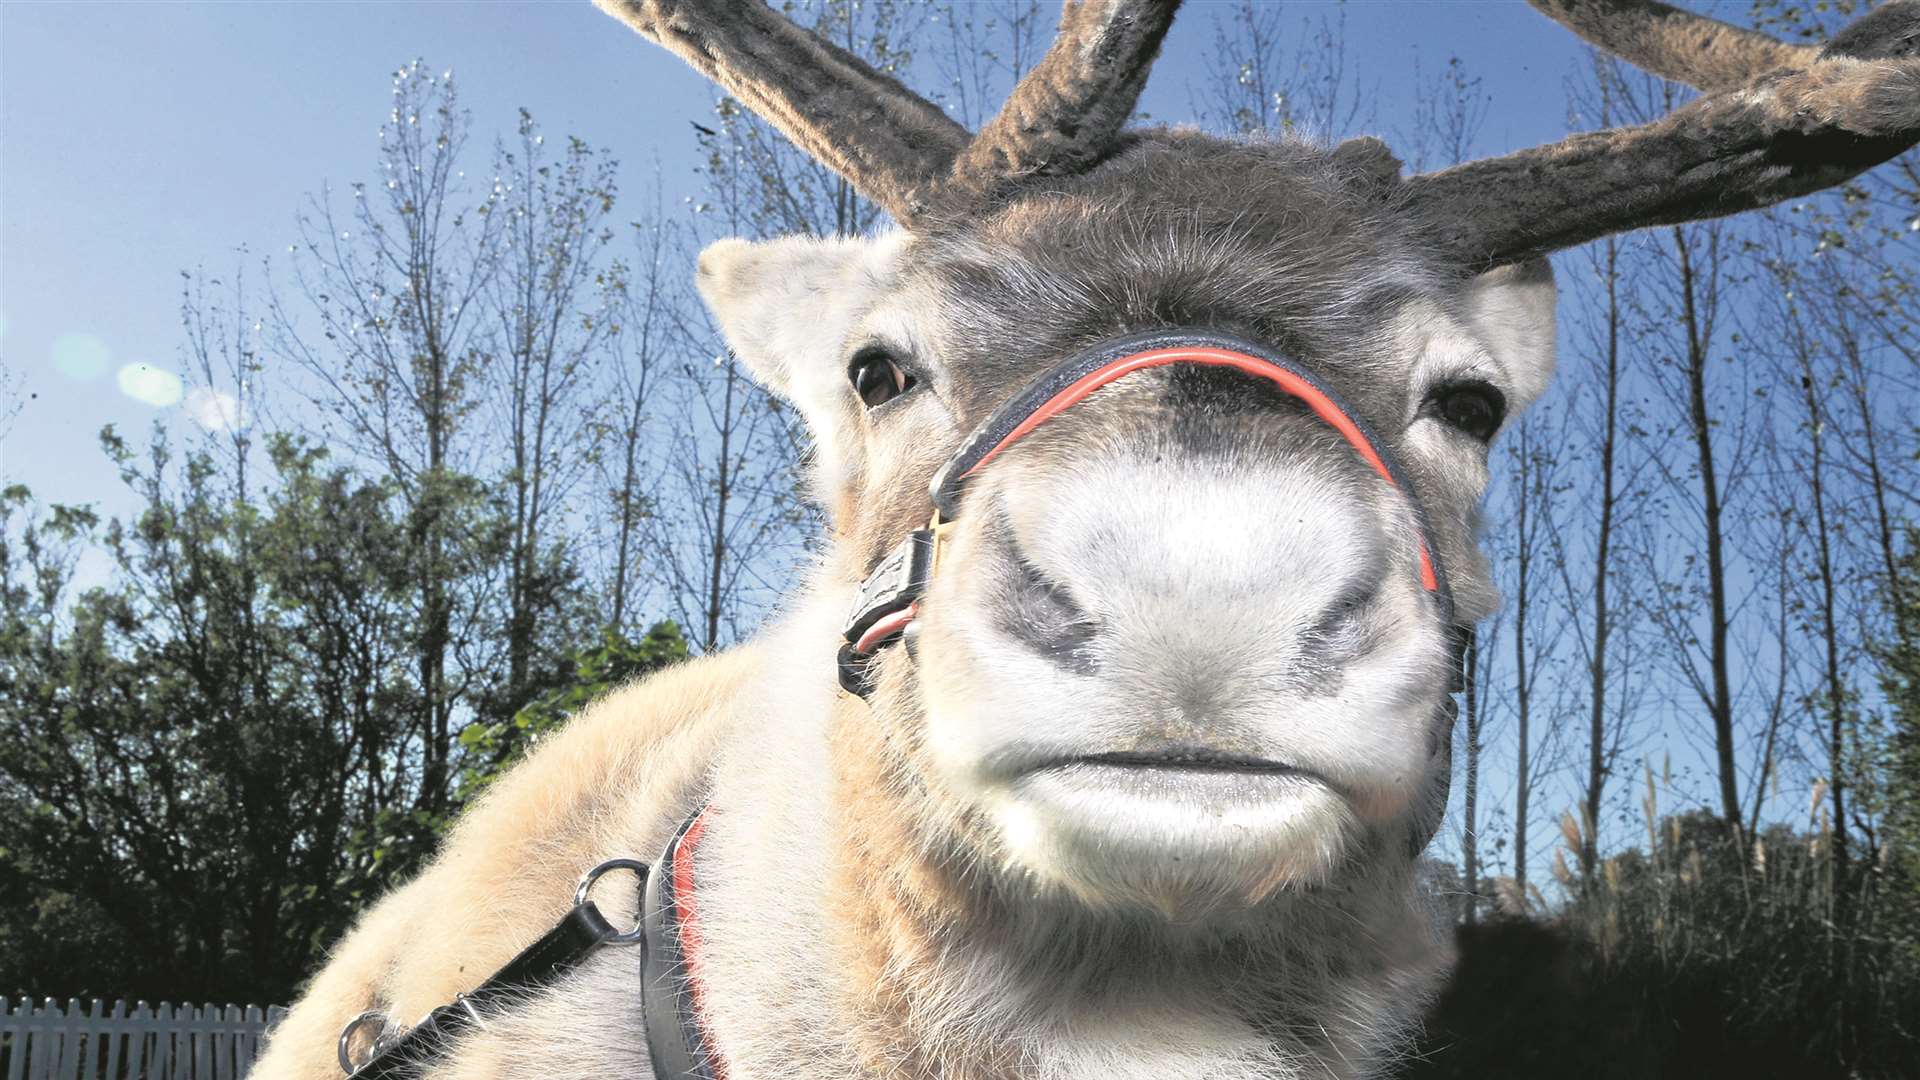 Meet the reindeer at Wildwood